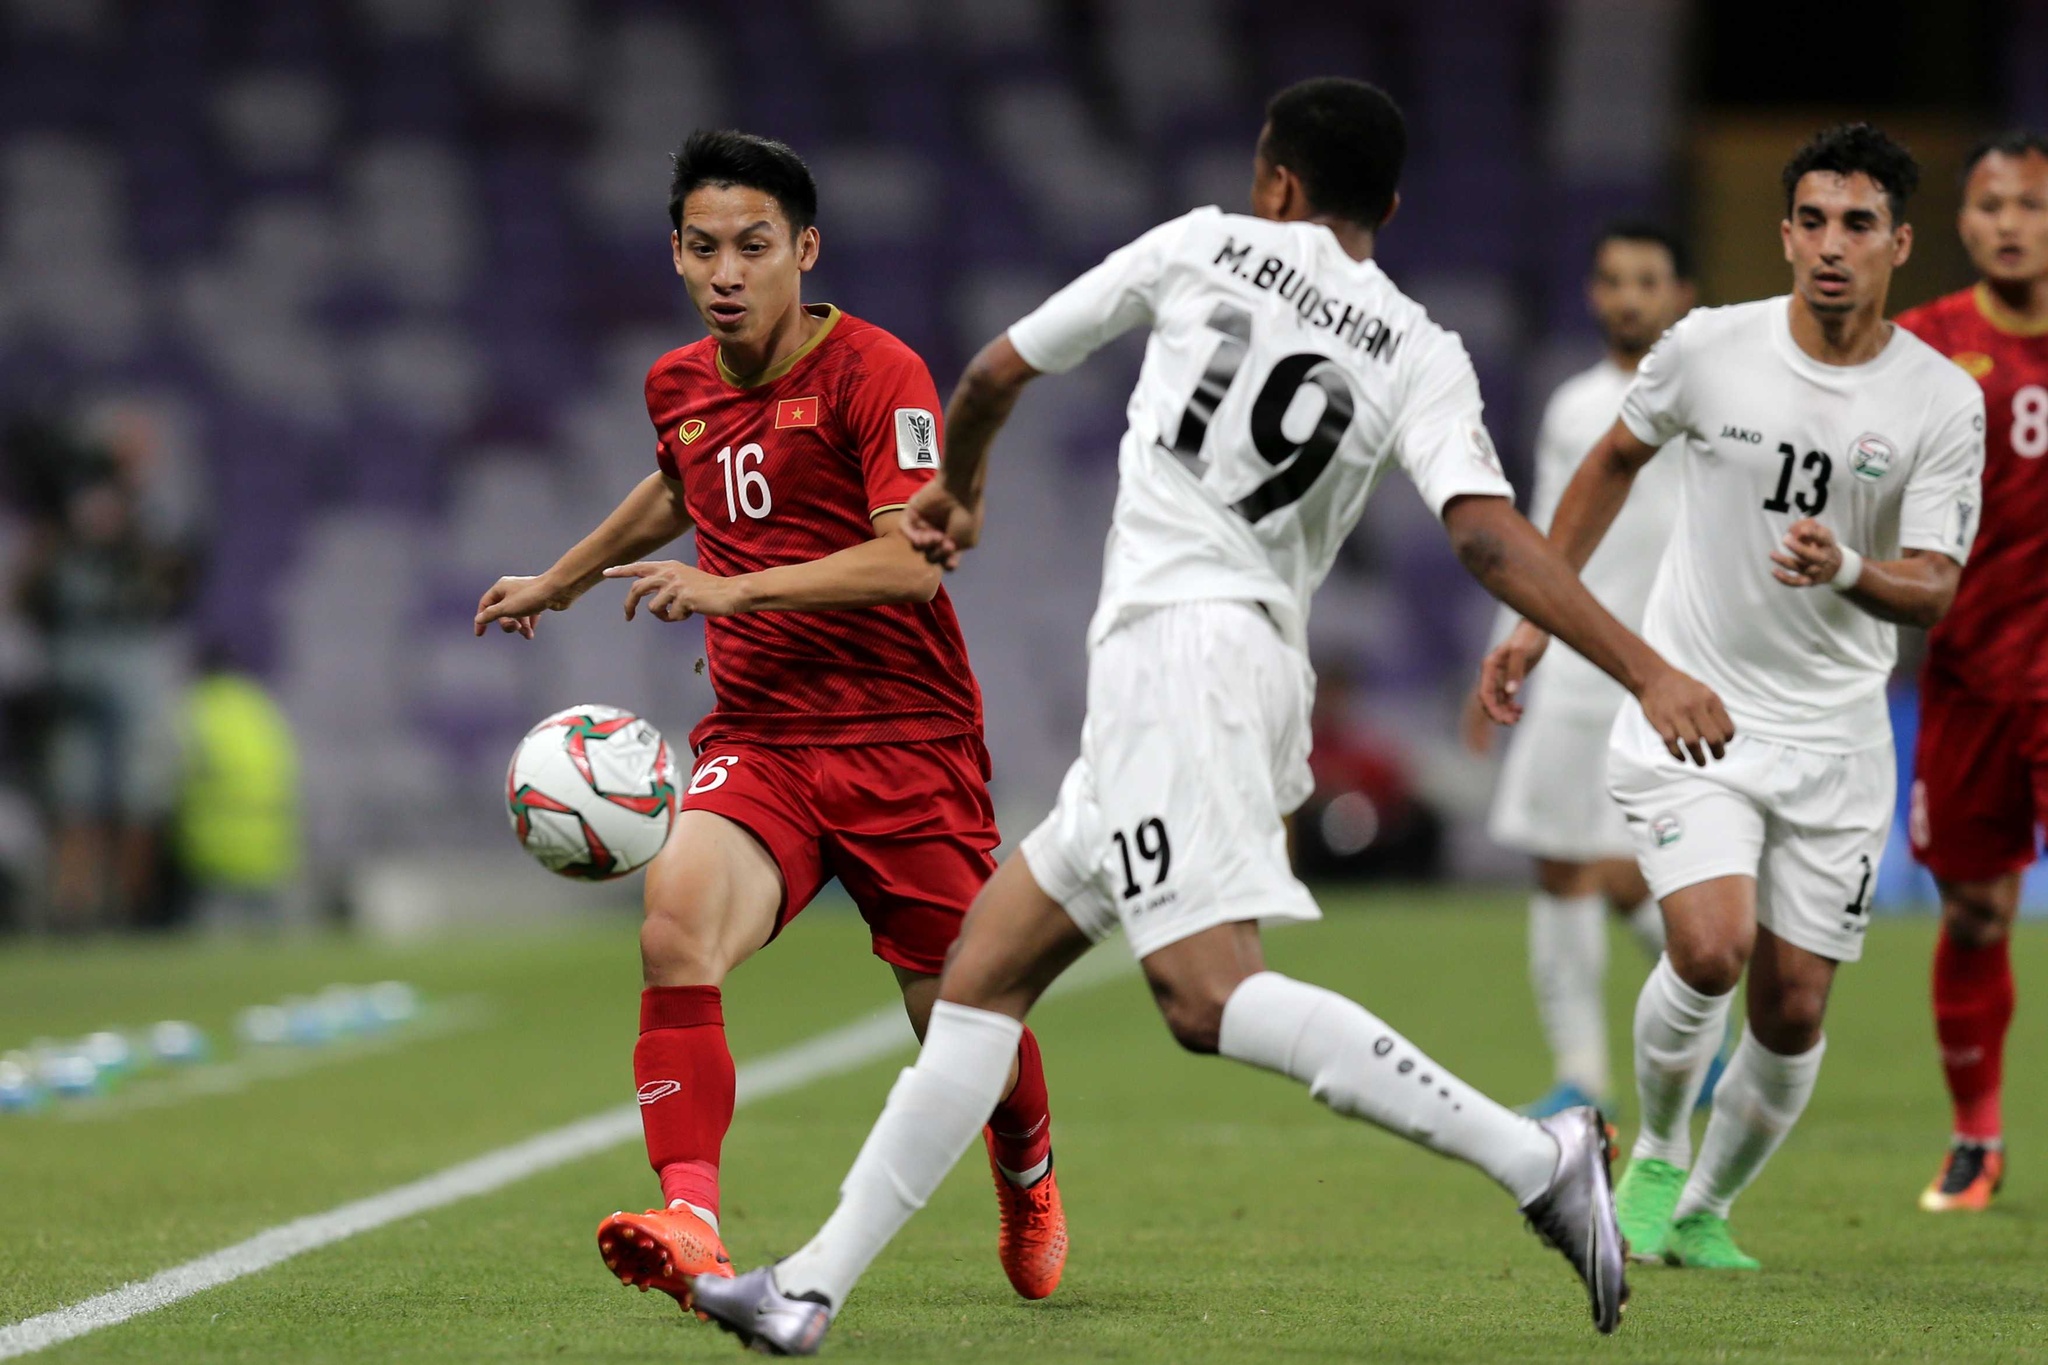 Báo chí Thái Lan so sánh kỷ lục dự Asian Cup của đội nhà với tuyển Việt Nam - ảnh 1